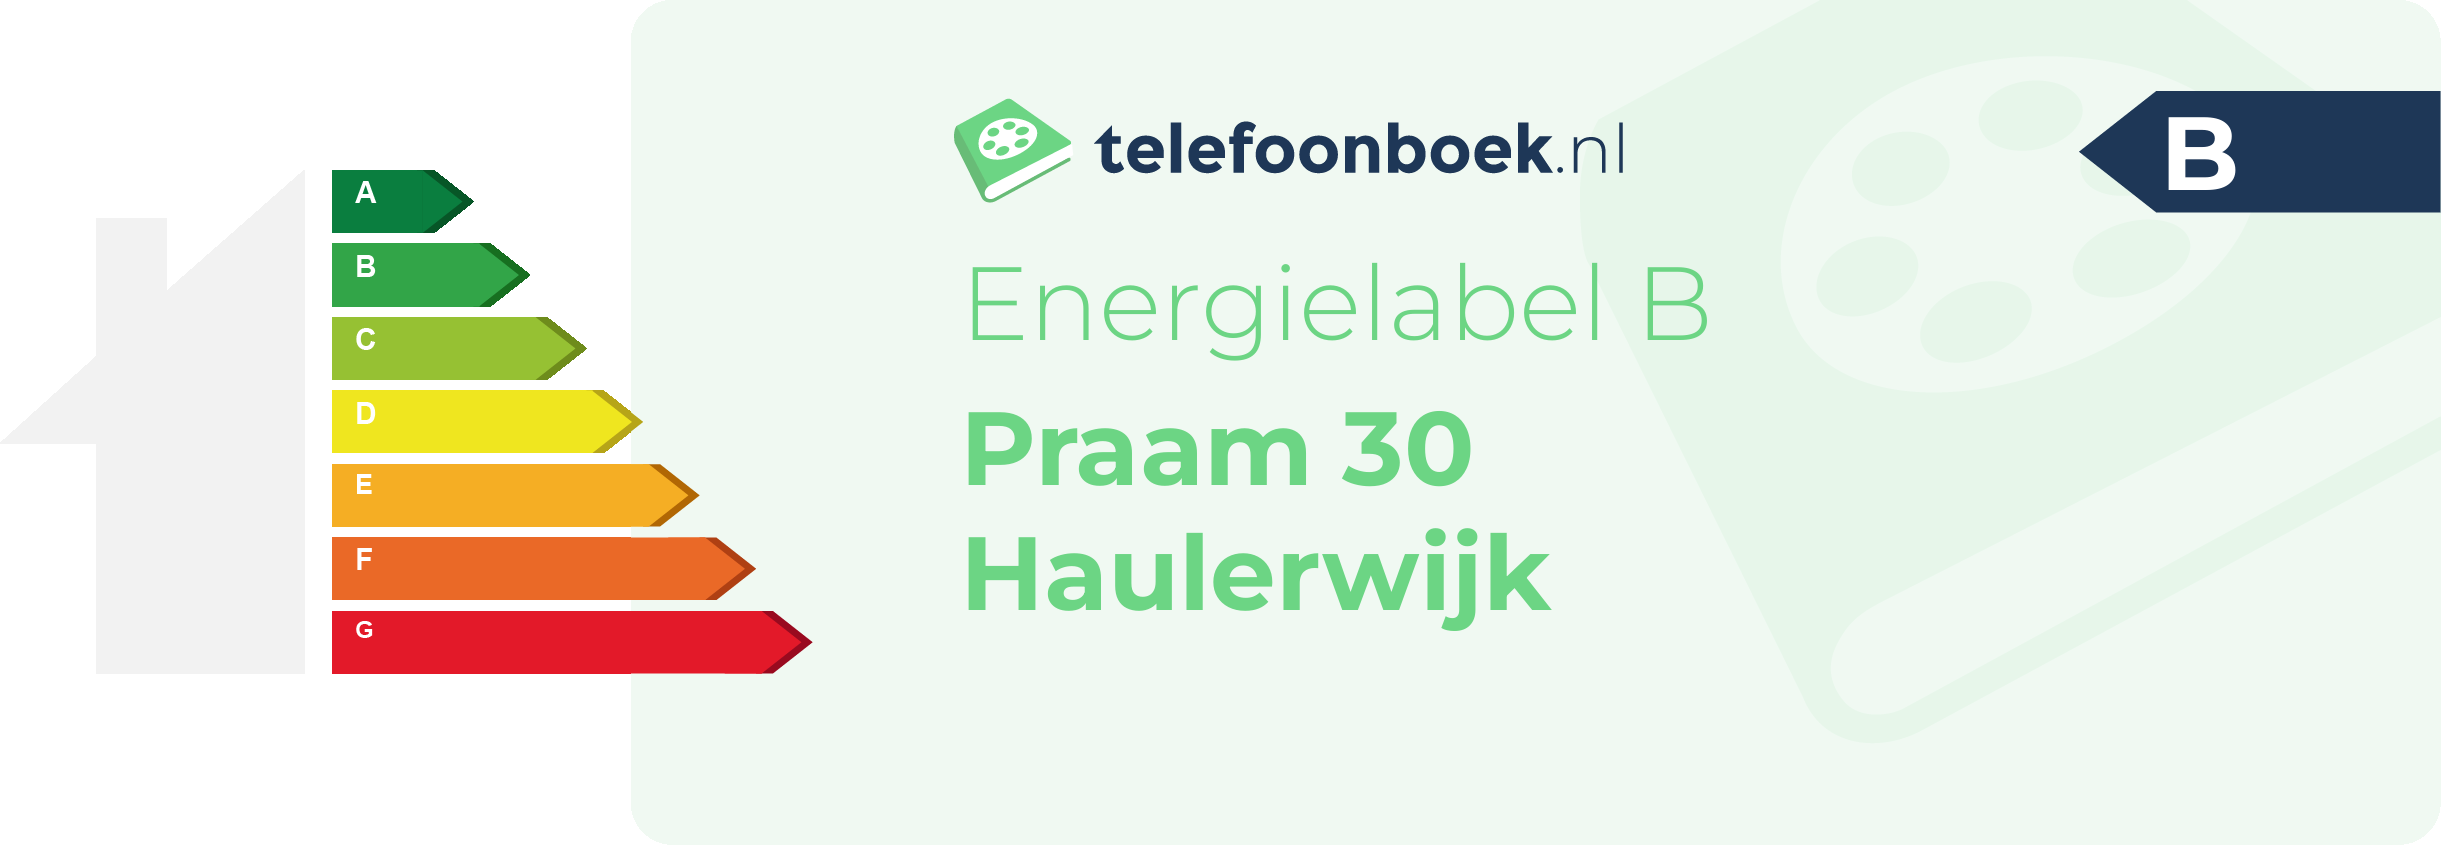 Energielabel Praam 30 Haulerwijk